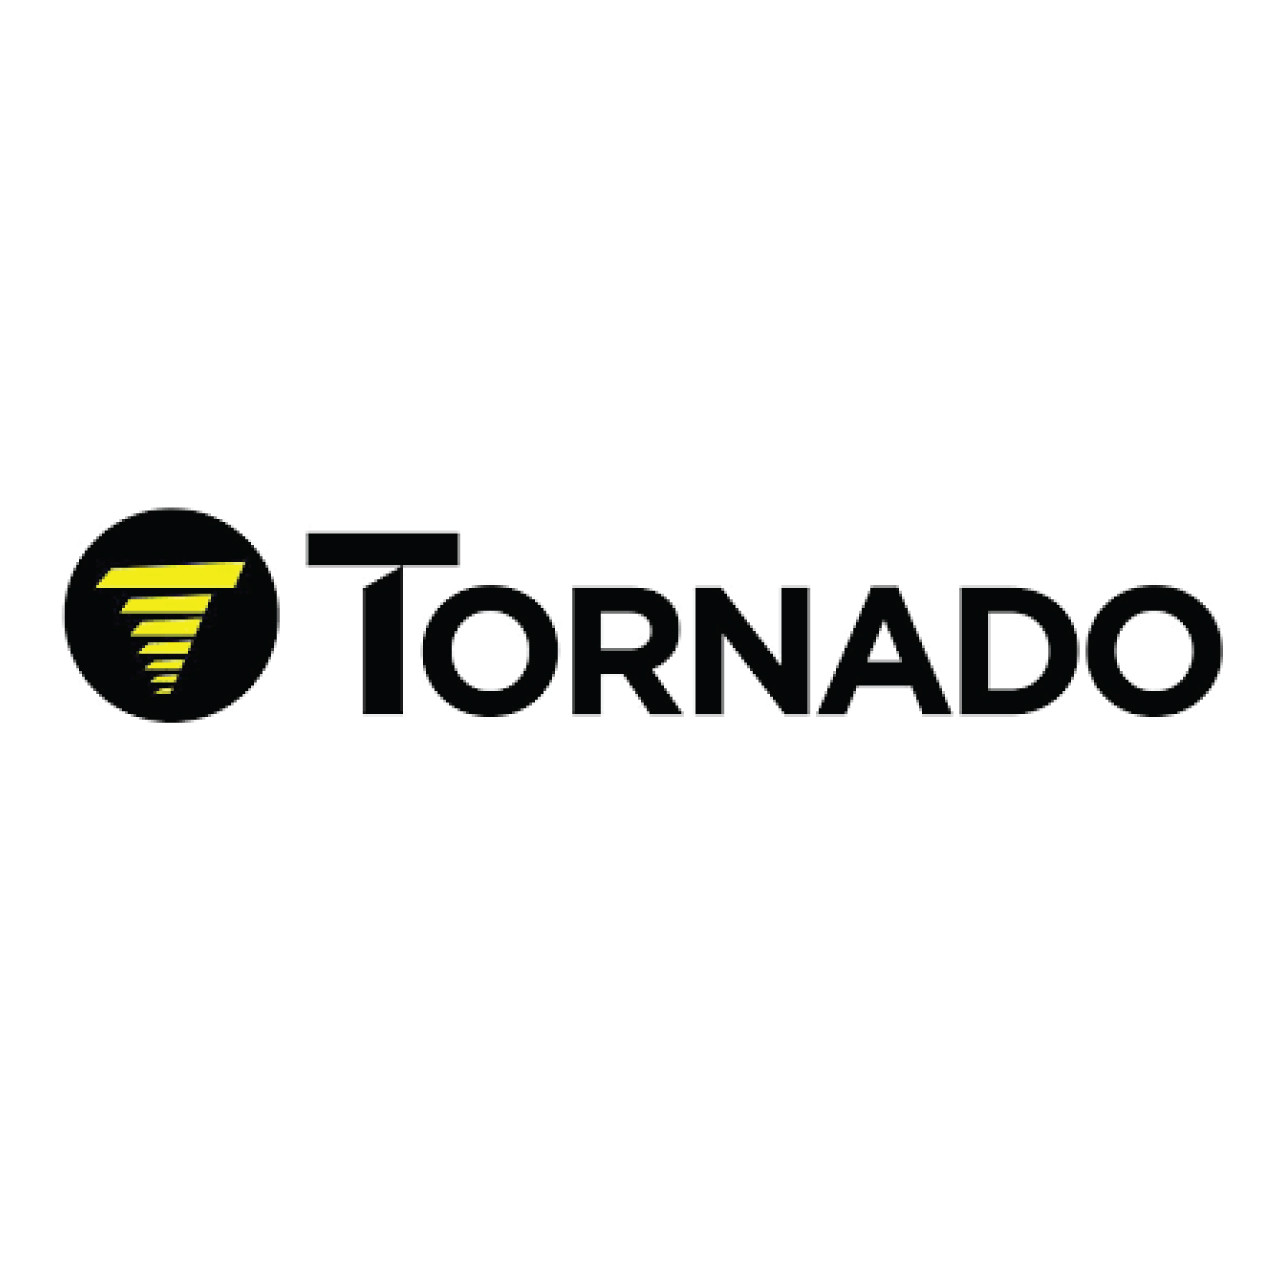 Tornado 33516,Tornado 33516 LATCH SPRING,Tornado parts, tornado vacuum parts, tornado autoscrubber parts, tornado scrubber parts, tornado floor machine parts, tornado sweeper parts, tornado ck parts, tornado windshier parts